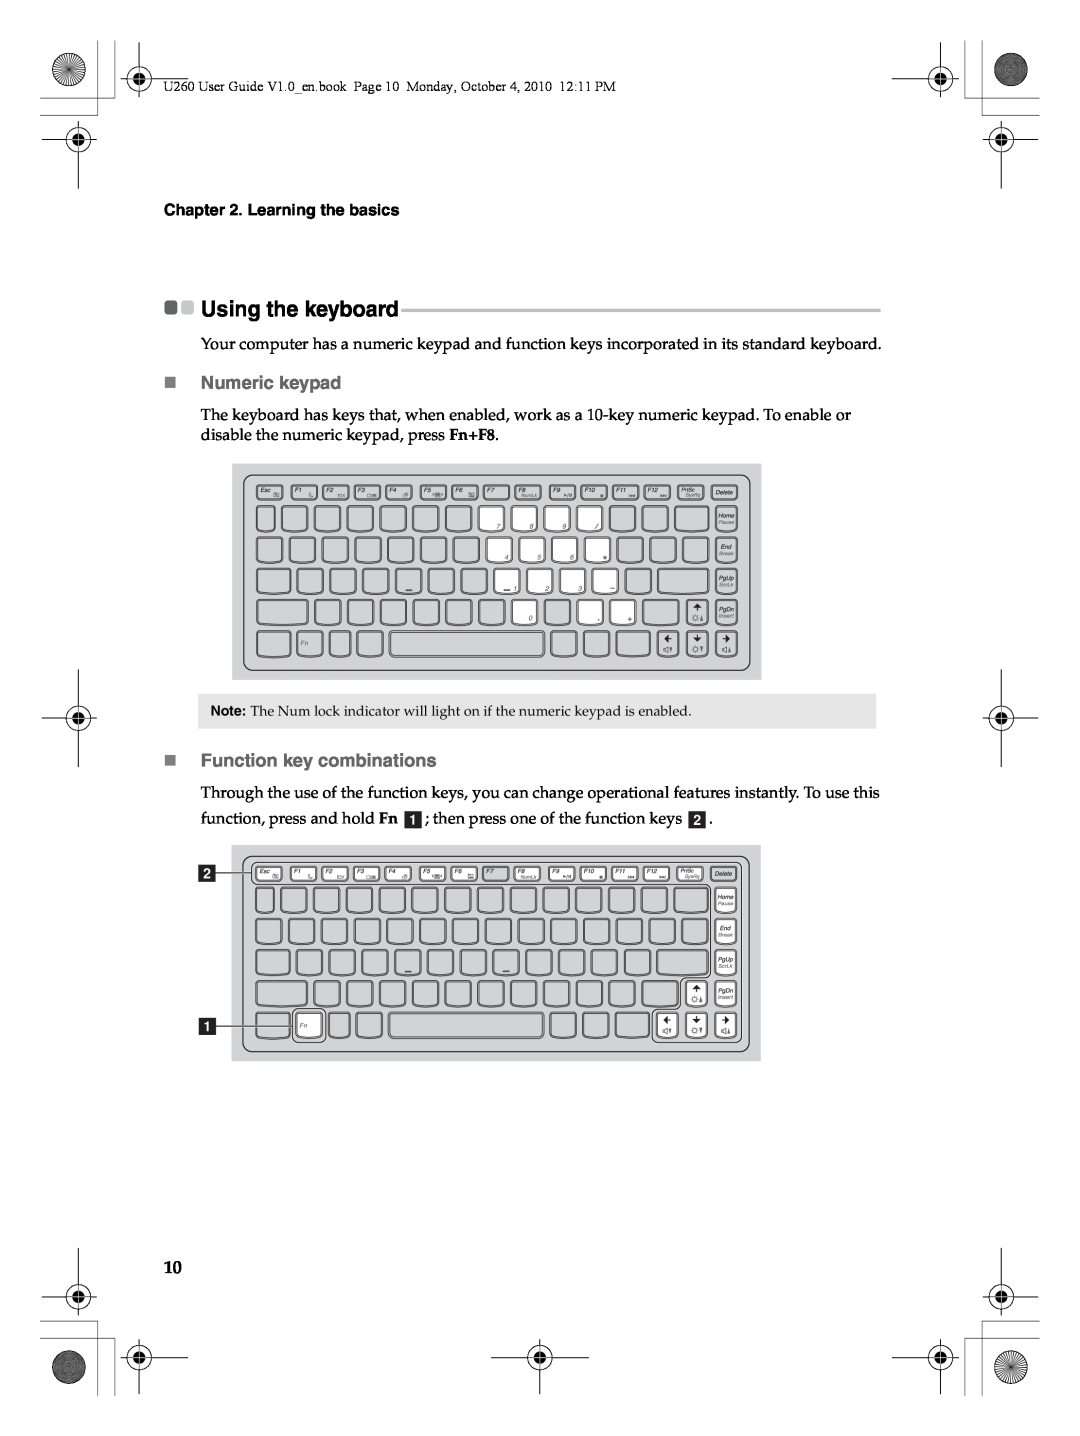 Lenovo U260 manual Using the keyboard, „Numeric keypad, „Function key combinations, Learning the basics 